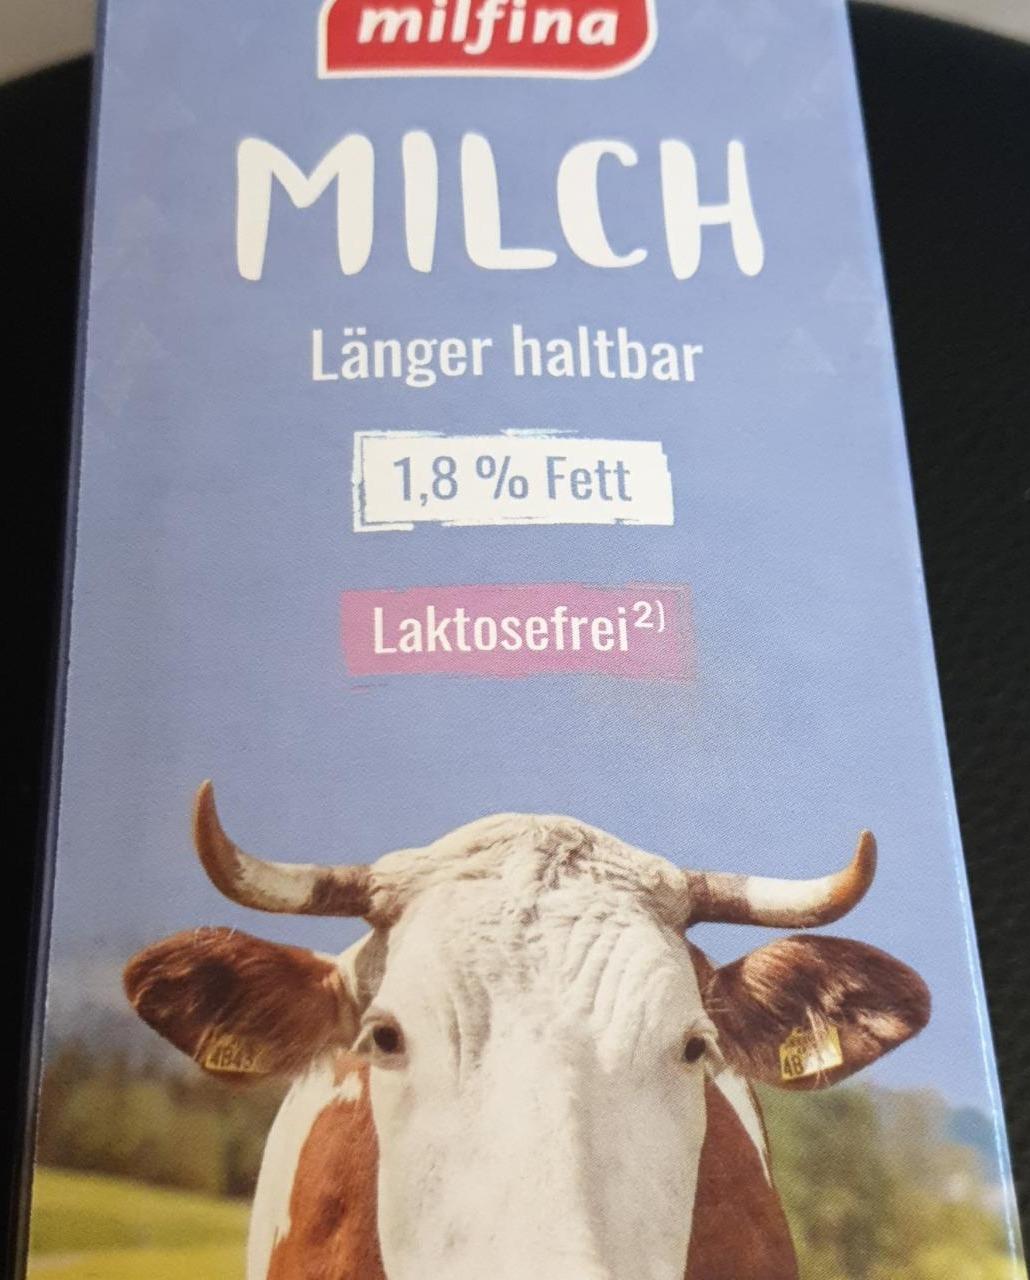 Fotografie - Milch Laktosefrei 1,8% Fett Milfina